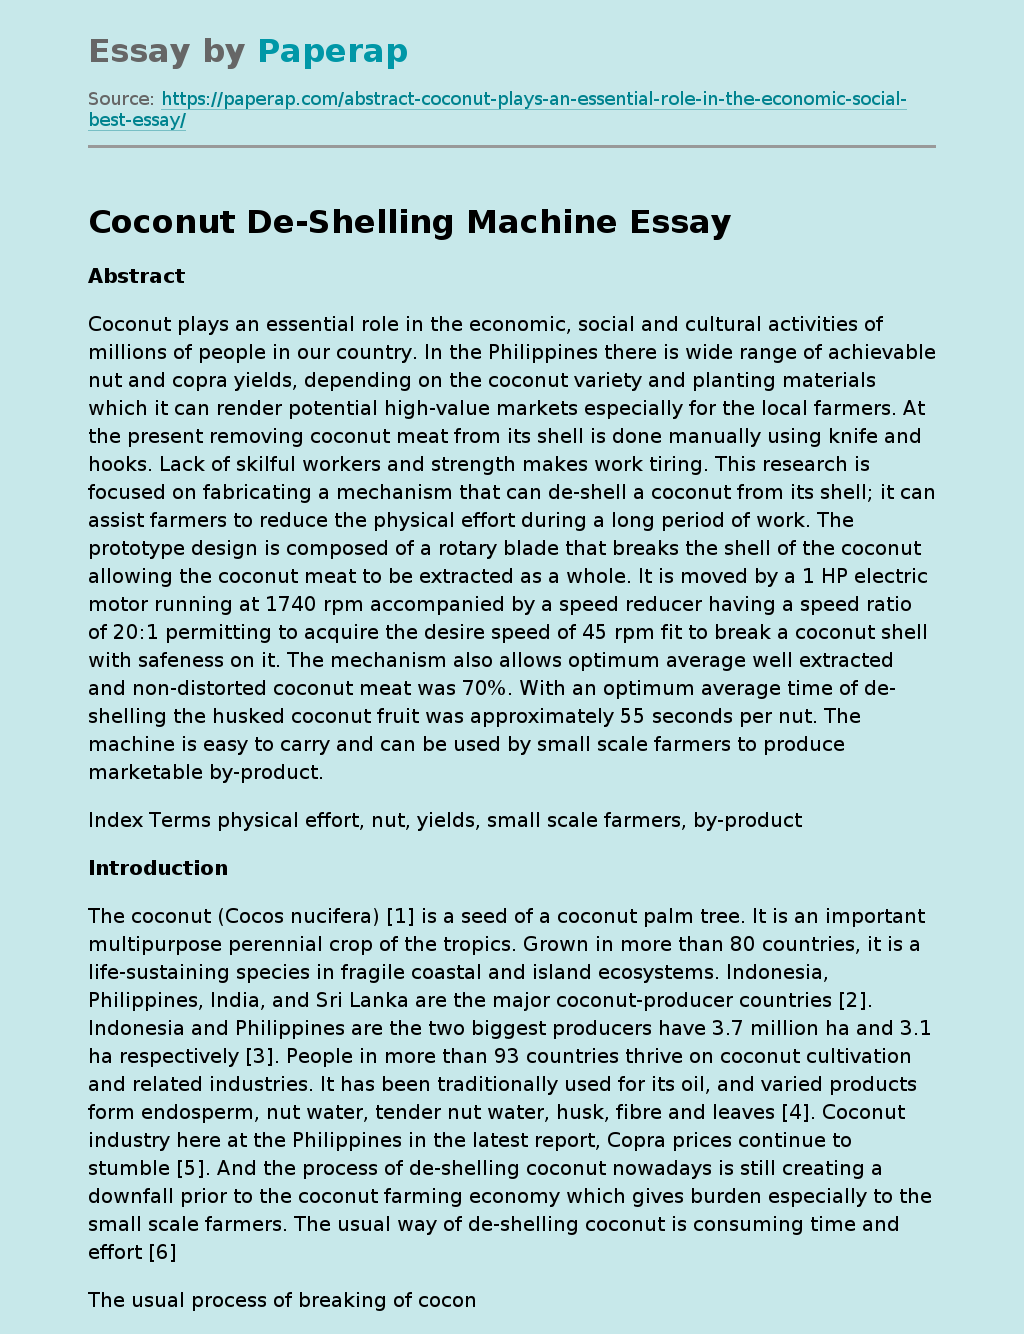 Coconut De-Shelling Machine